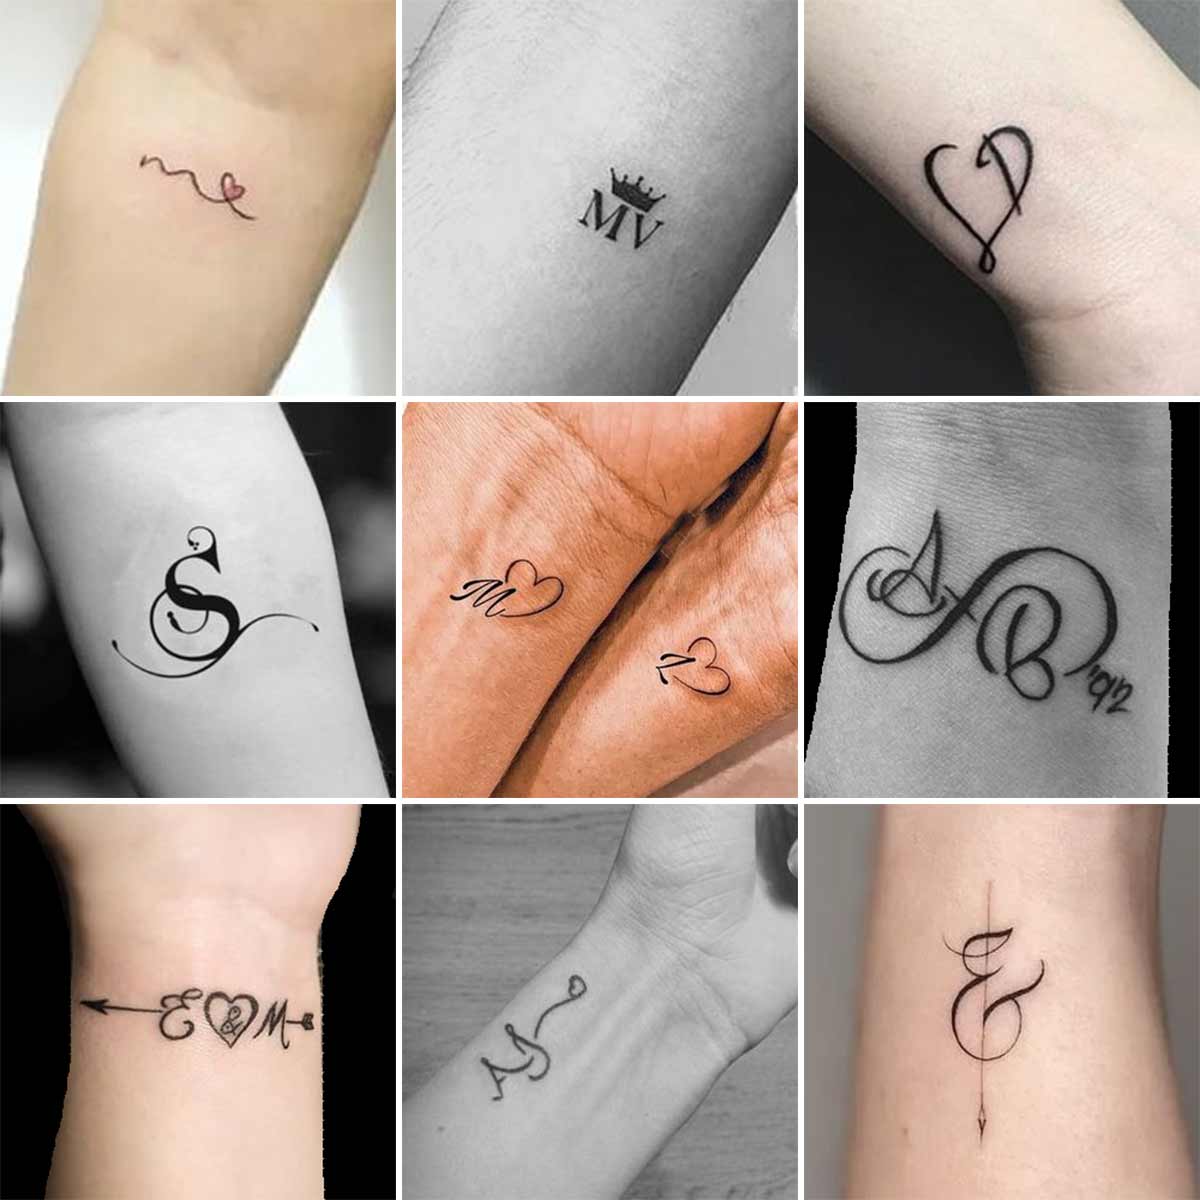 Tattoo lettere sul polso e braccio